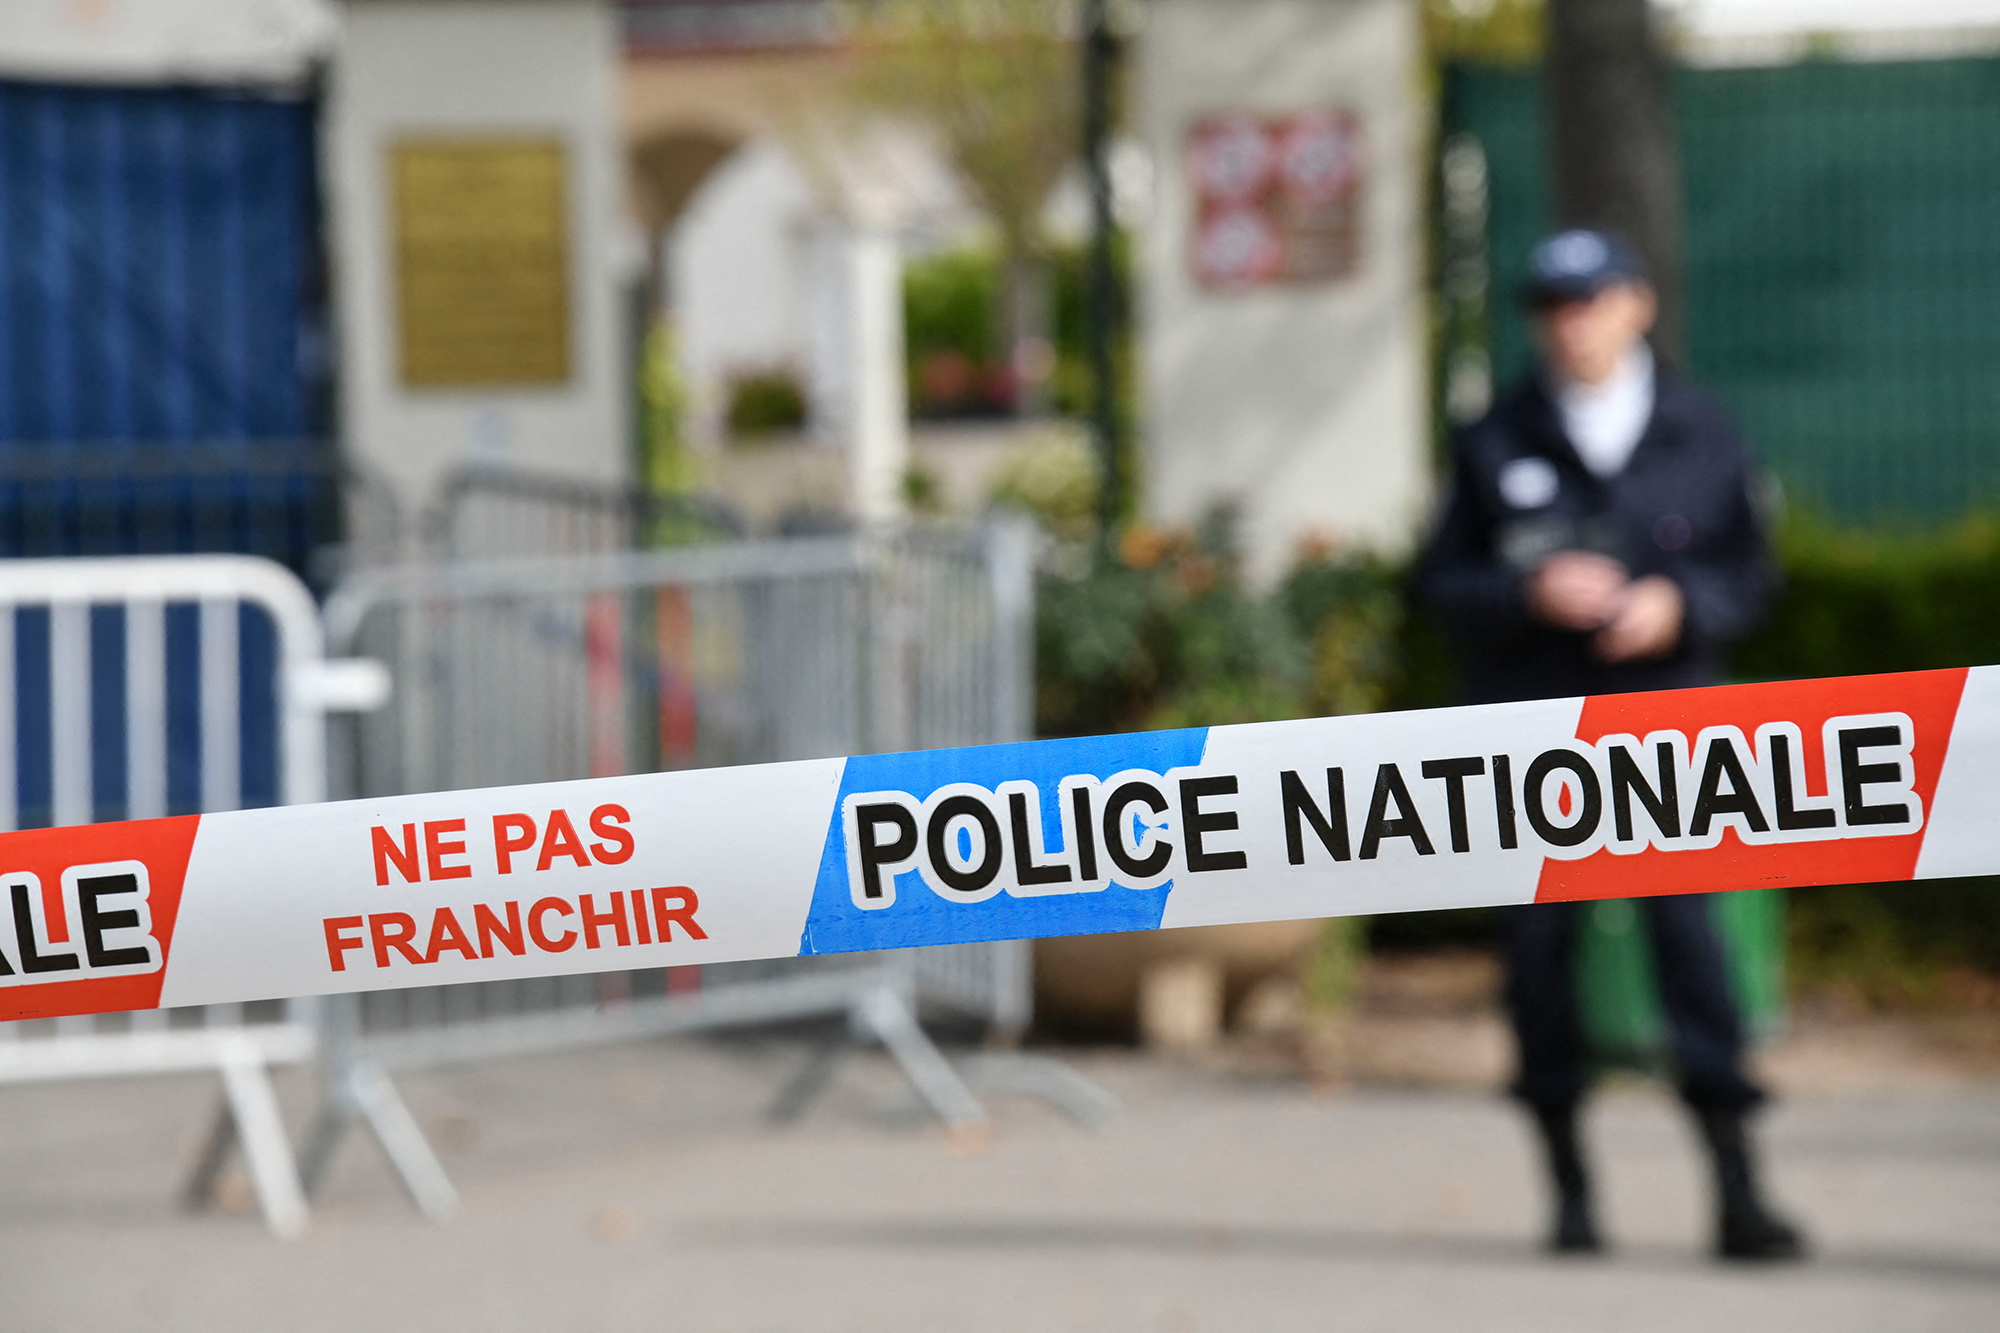 Absperrung der französischen Polizei (Illustrationsbild)